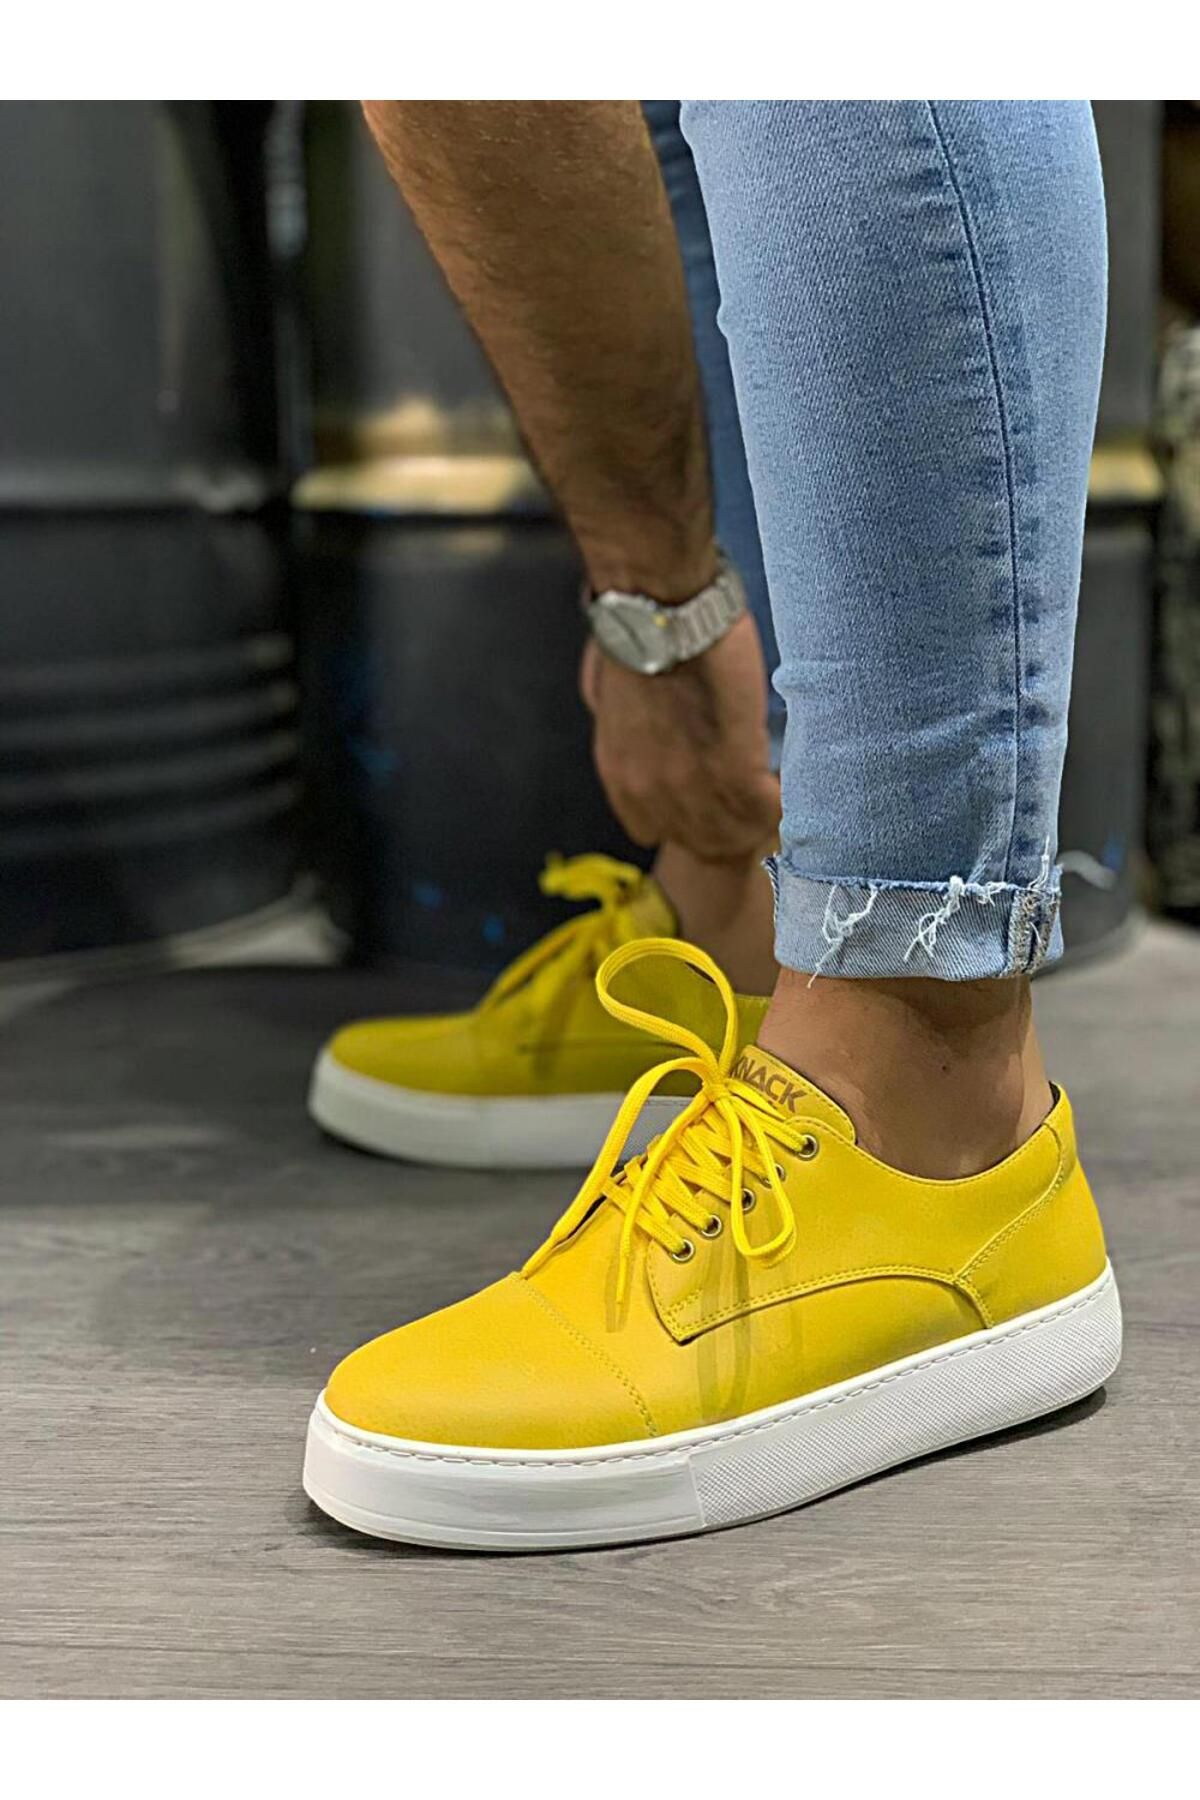 BZ Moda B050 BT Bağcıklı Ortopedik Taban Erkek Sneaker Ayakkabı Sarı